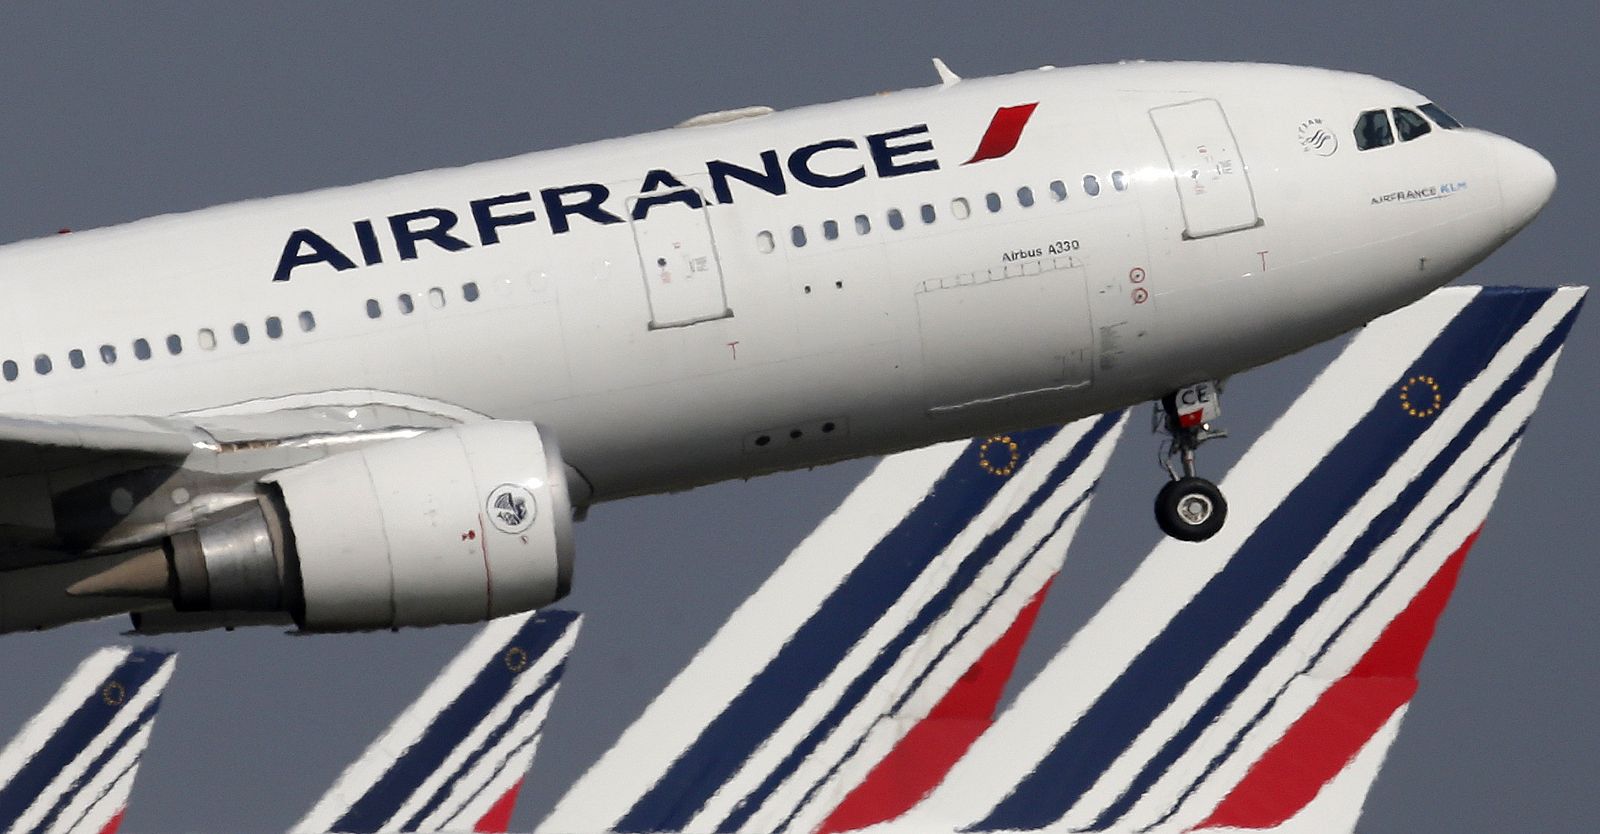 Un Air Bus A330 de Air France despegando en el aeropuerto de París Charles-de-Gaulle.